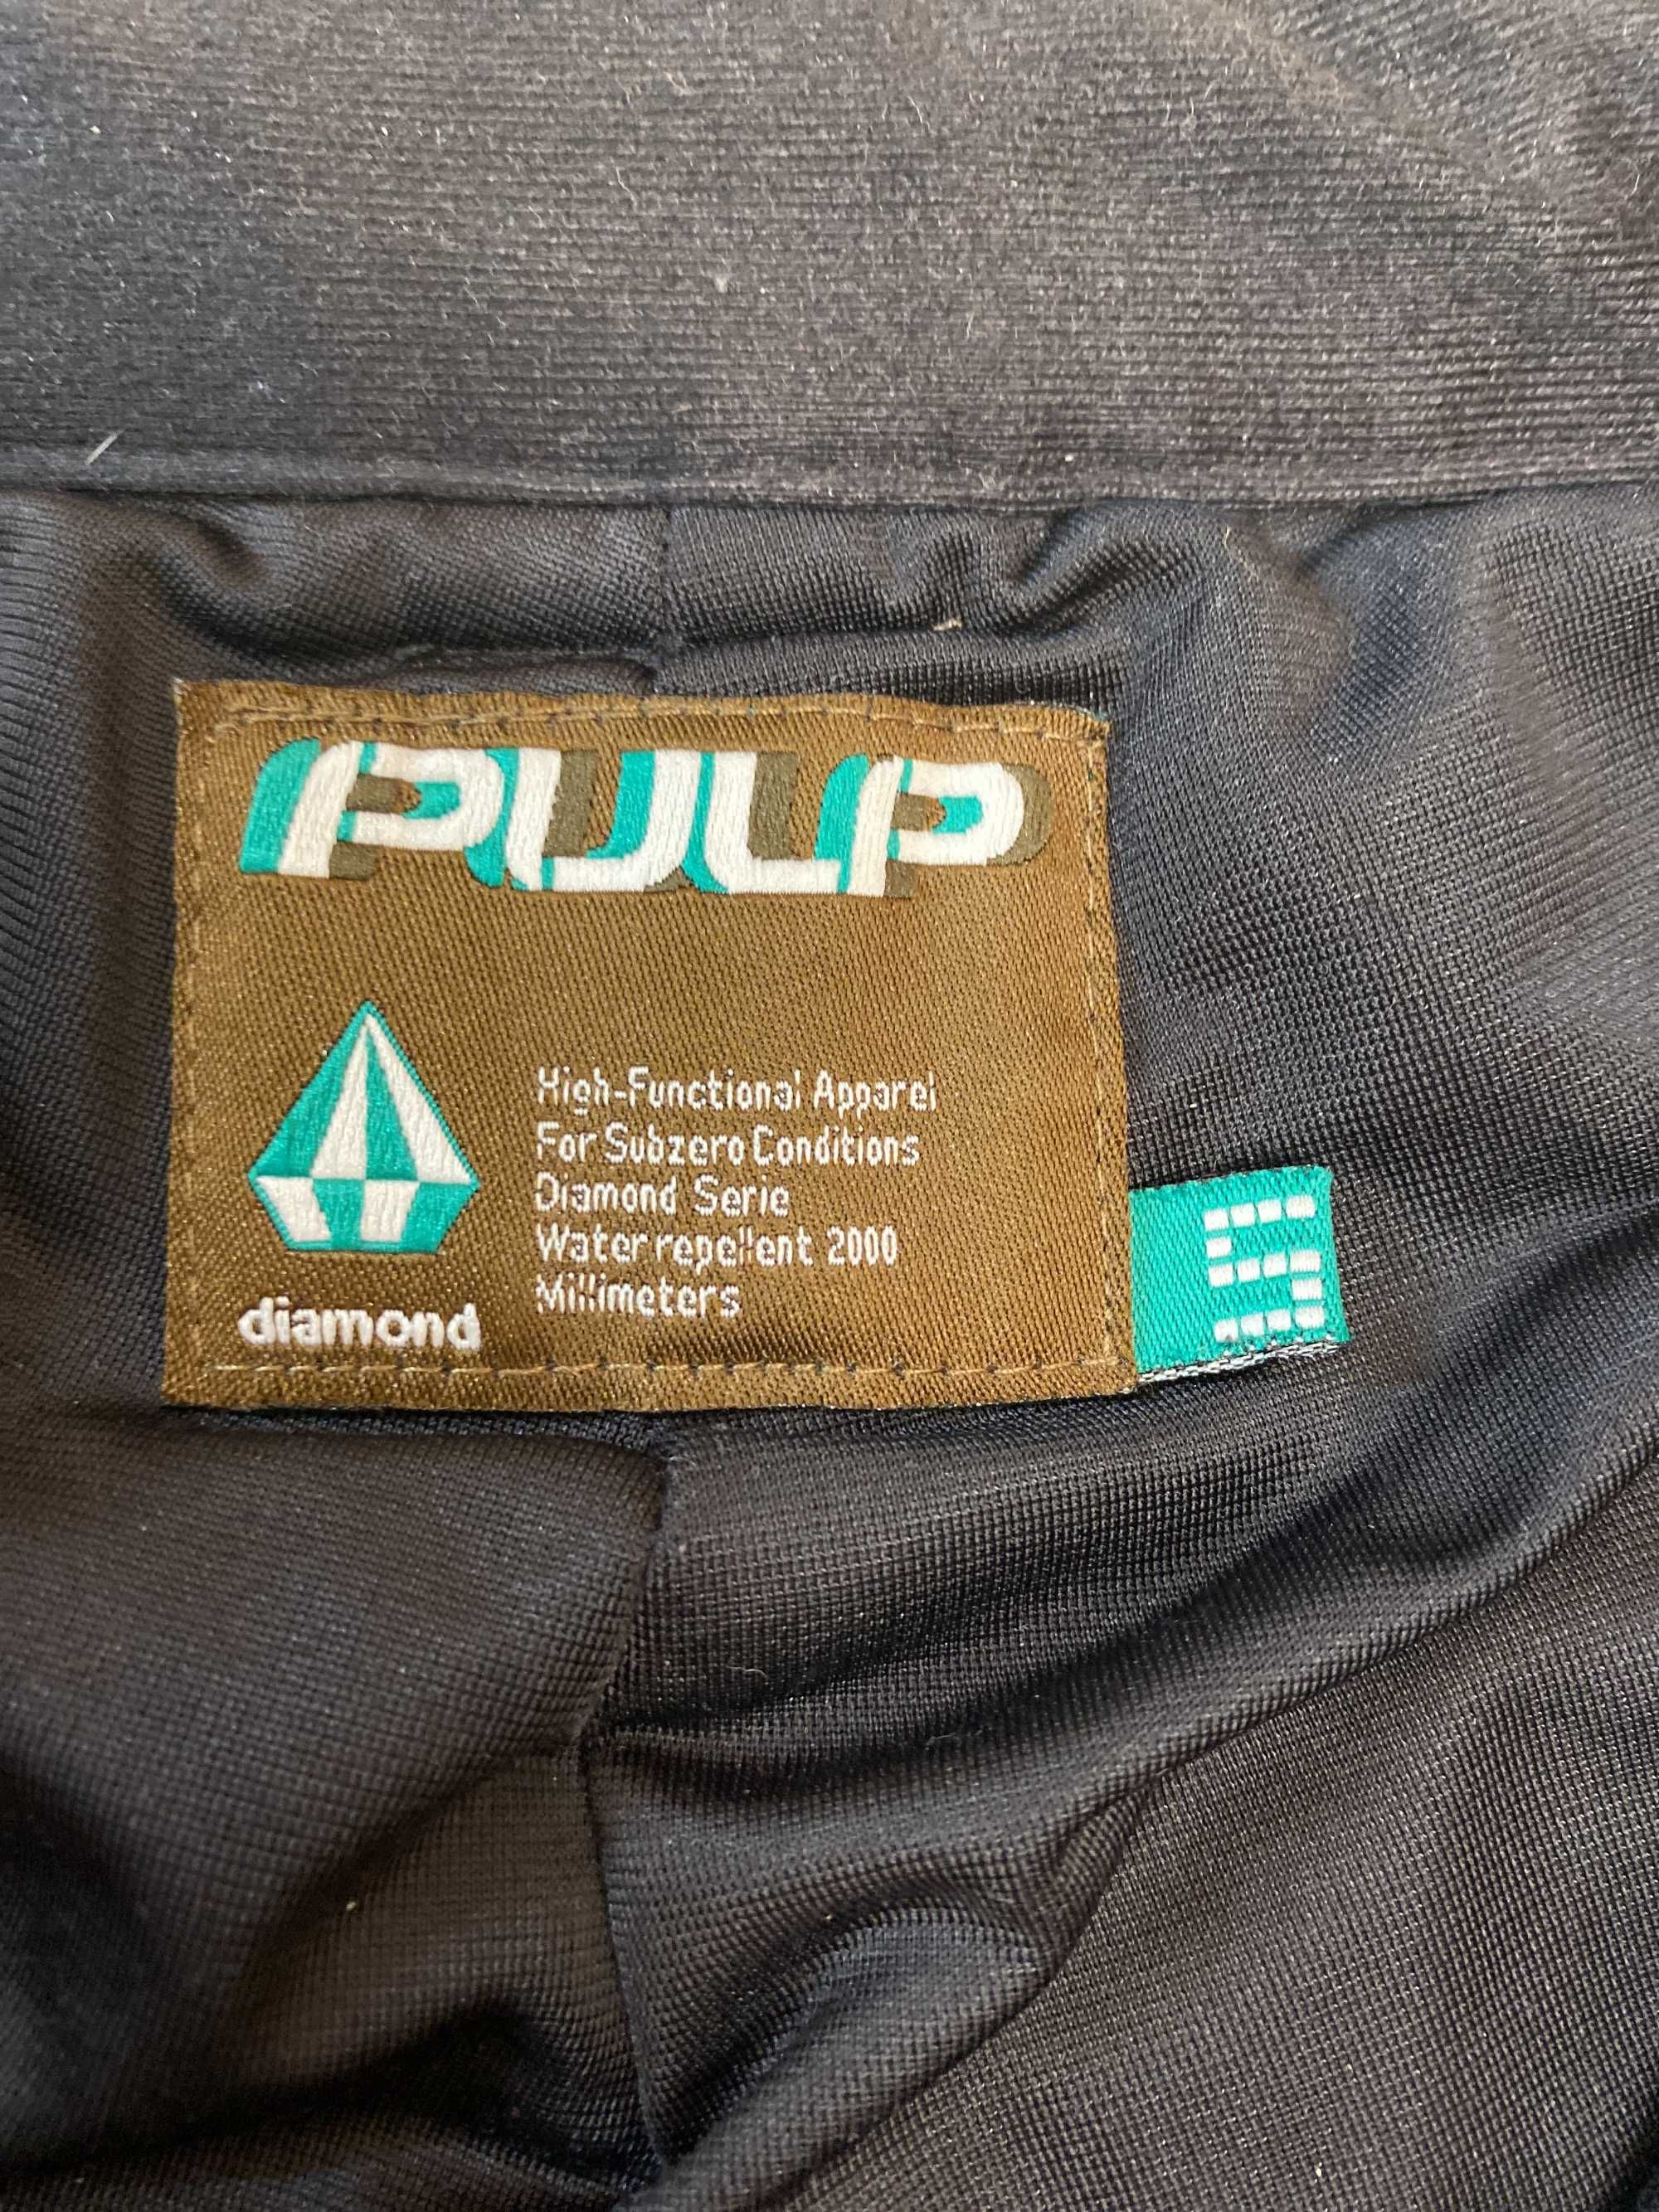 Чоловічі лижні штани Pulp S 480грн